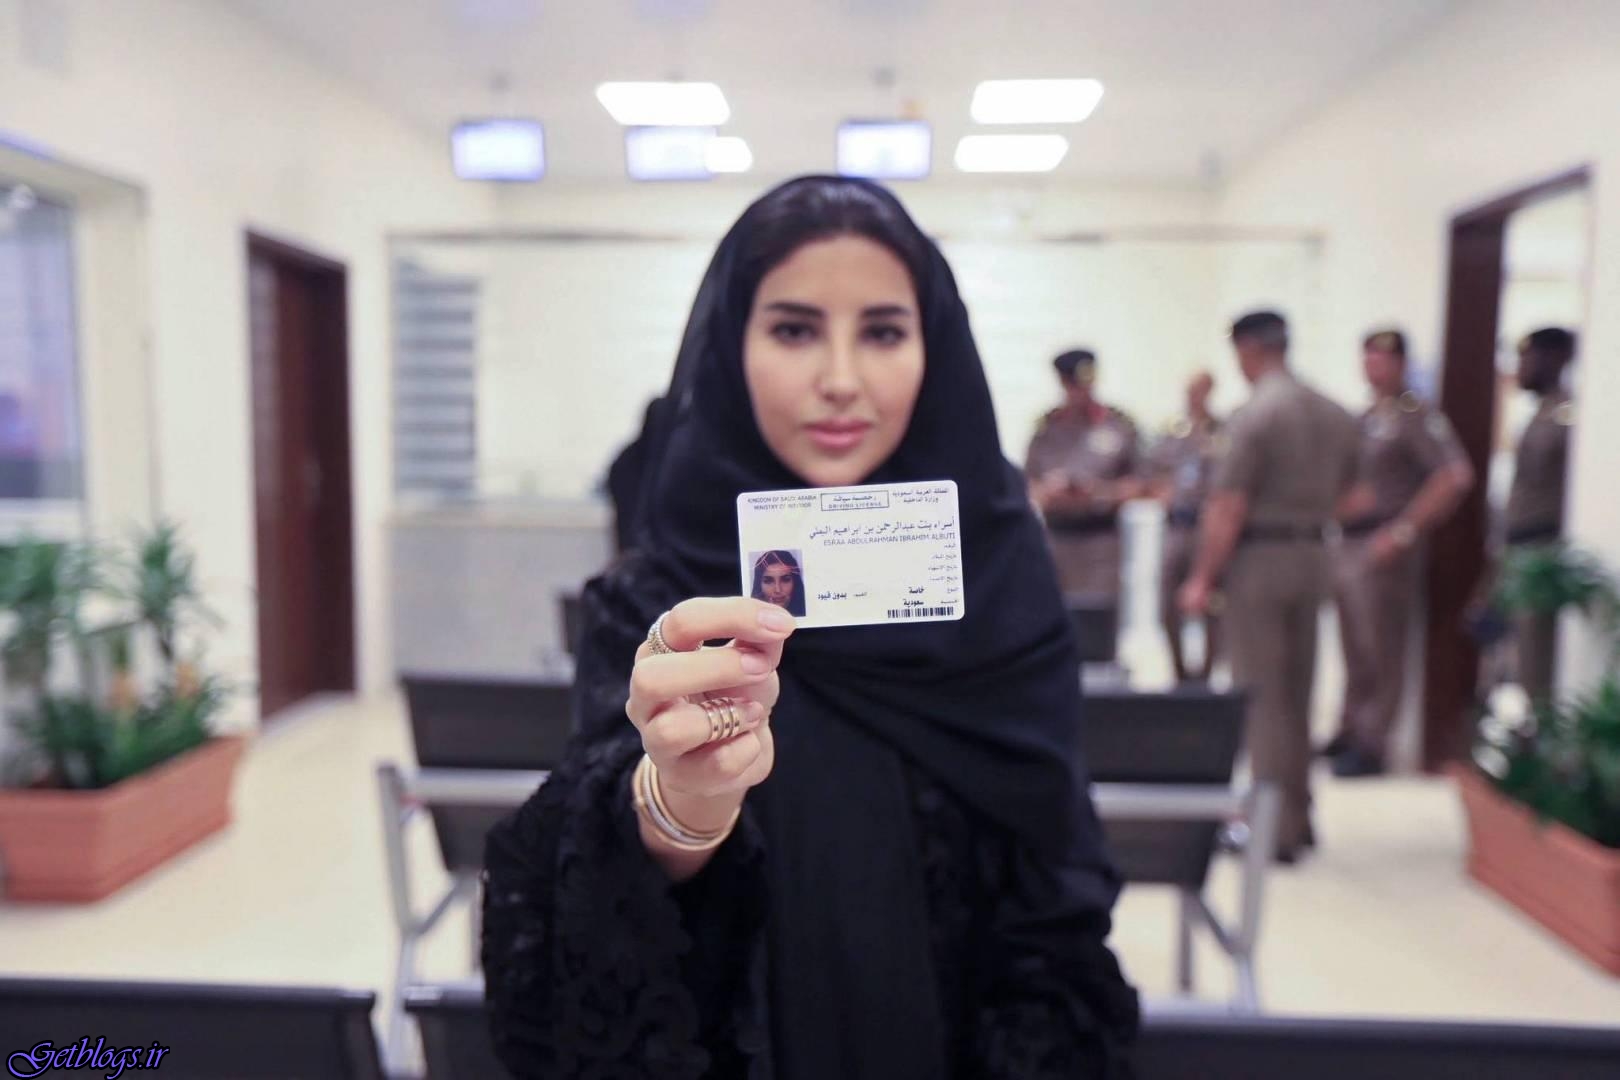 تصاویر) + اولین گواهینامه رانندگی جهت زنان عربستان صادر شد (